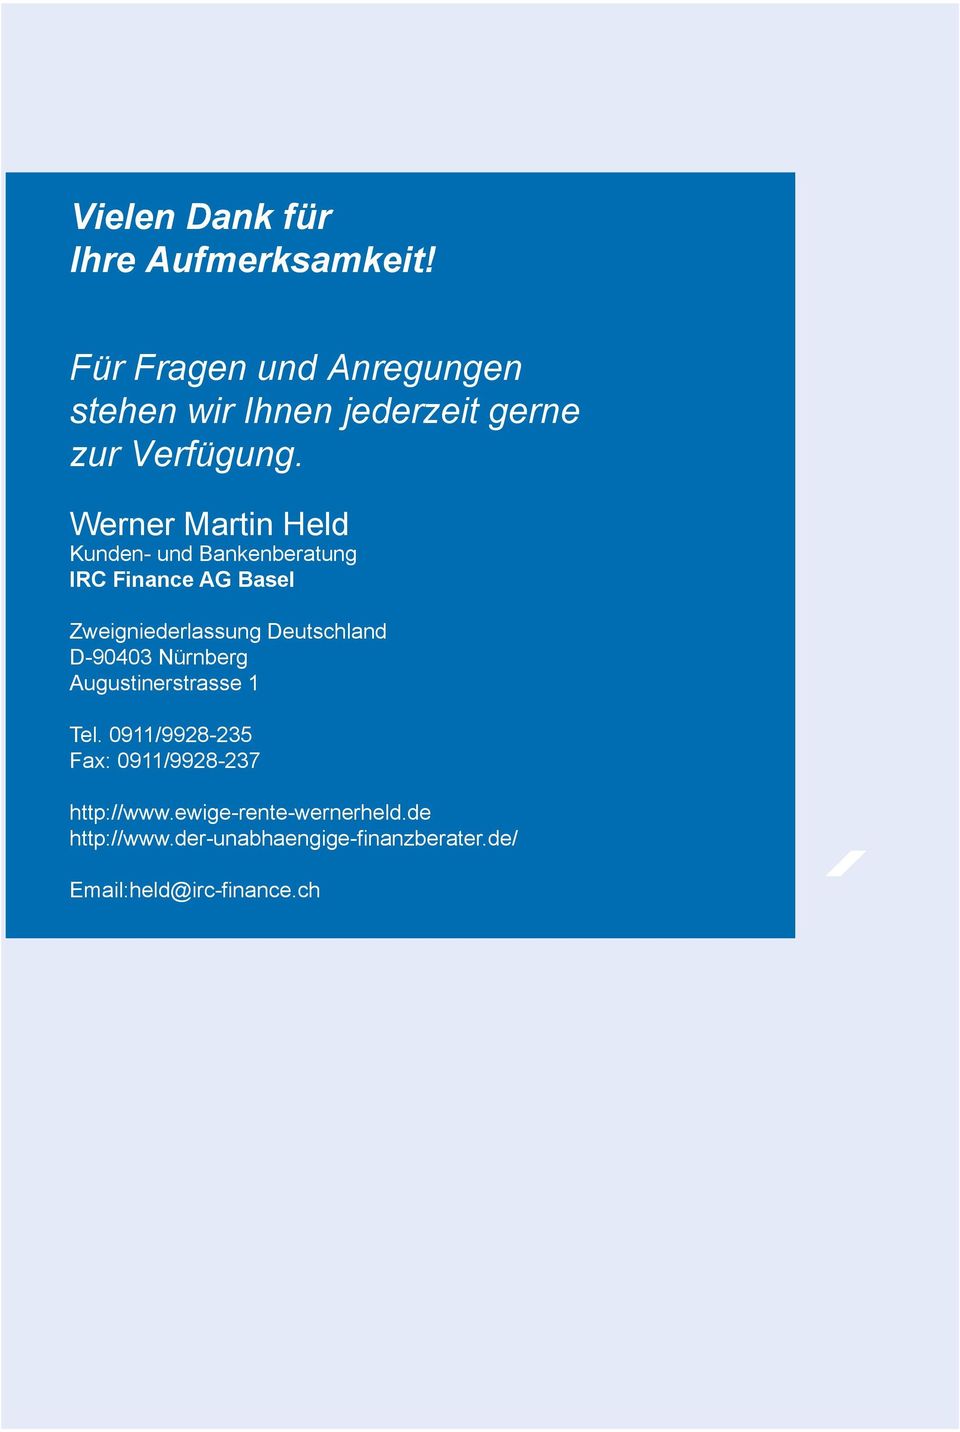 Werner Martin Held Kunden- und Bankenberatung IRC Finance AG Basel Zweigniederlassung Deutschland